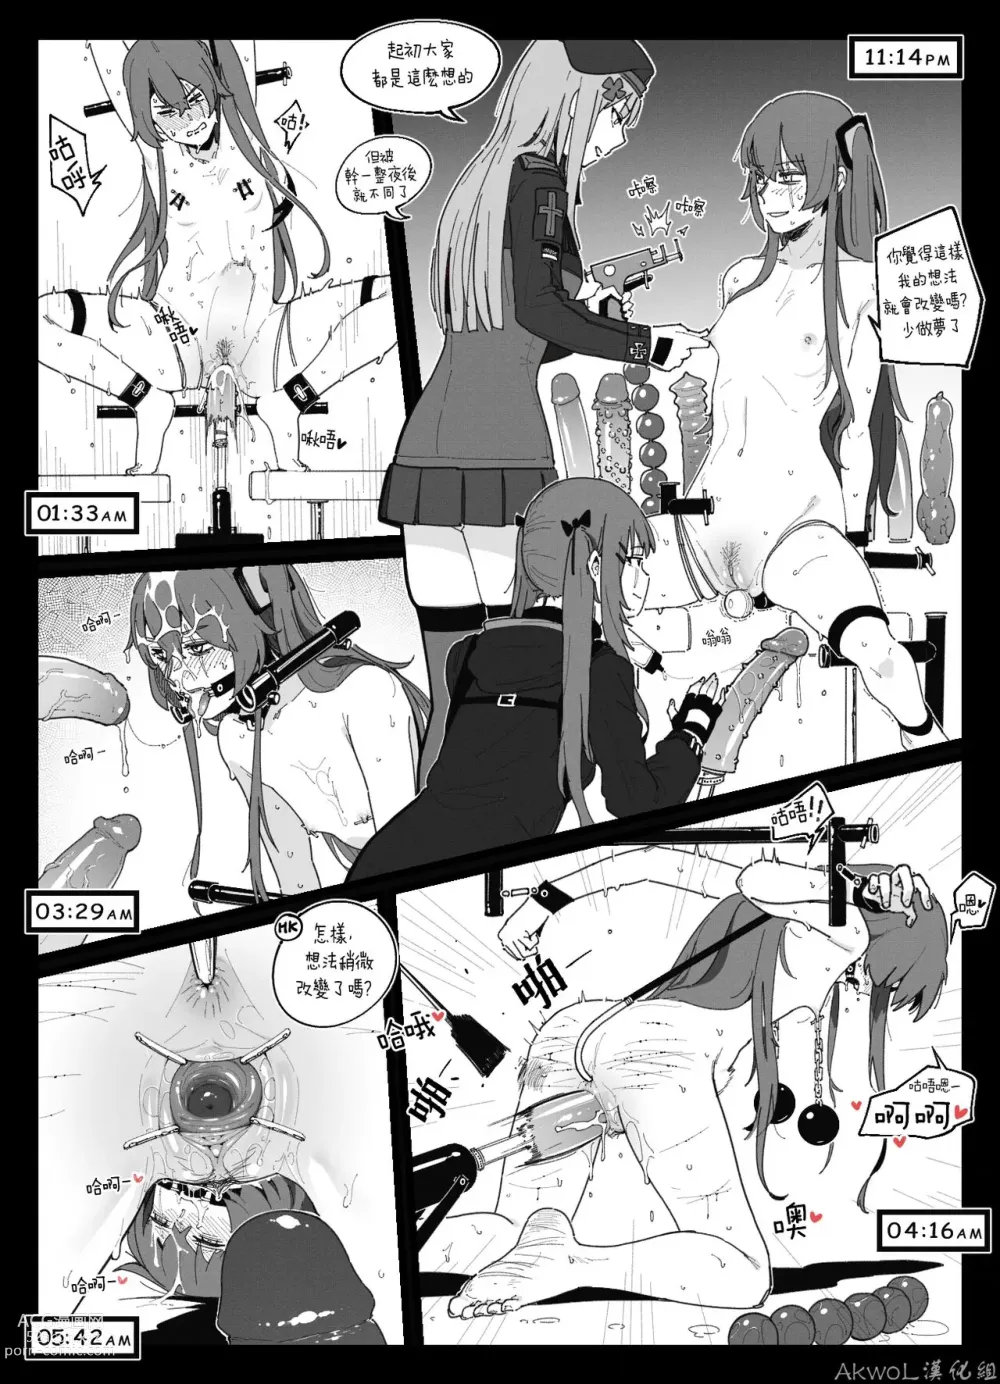 Page 1 of doujinshi UMP45 BDSM & HK416 (decensored)